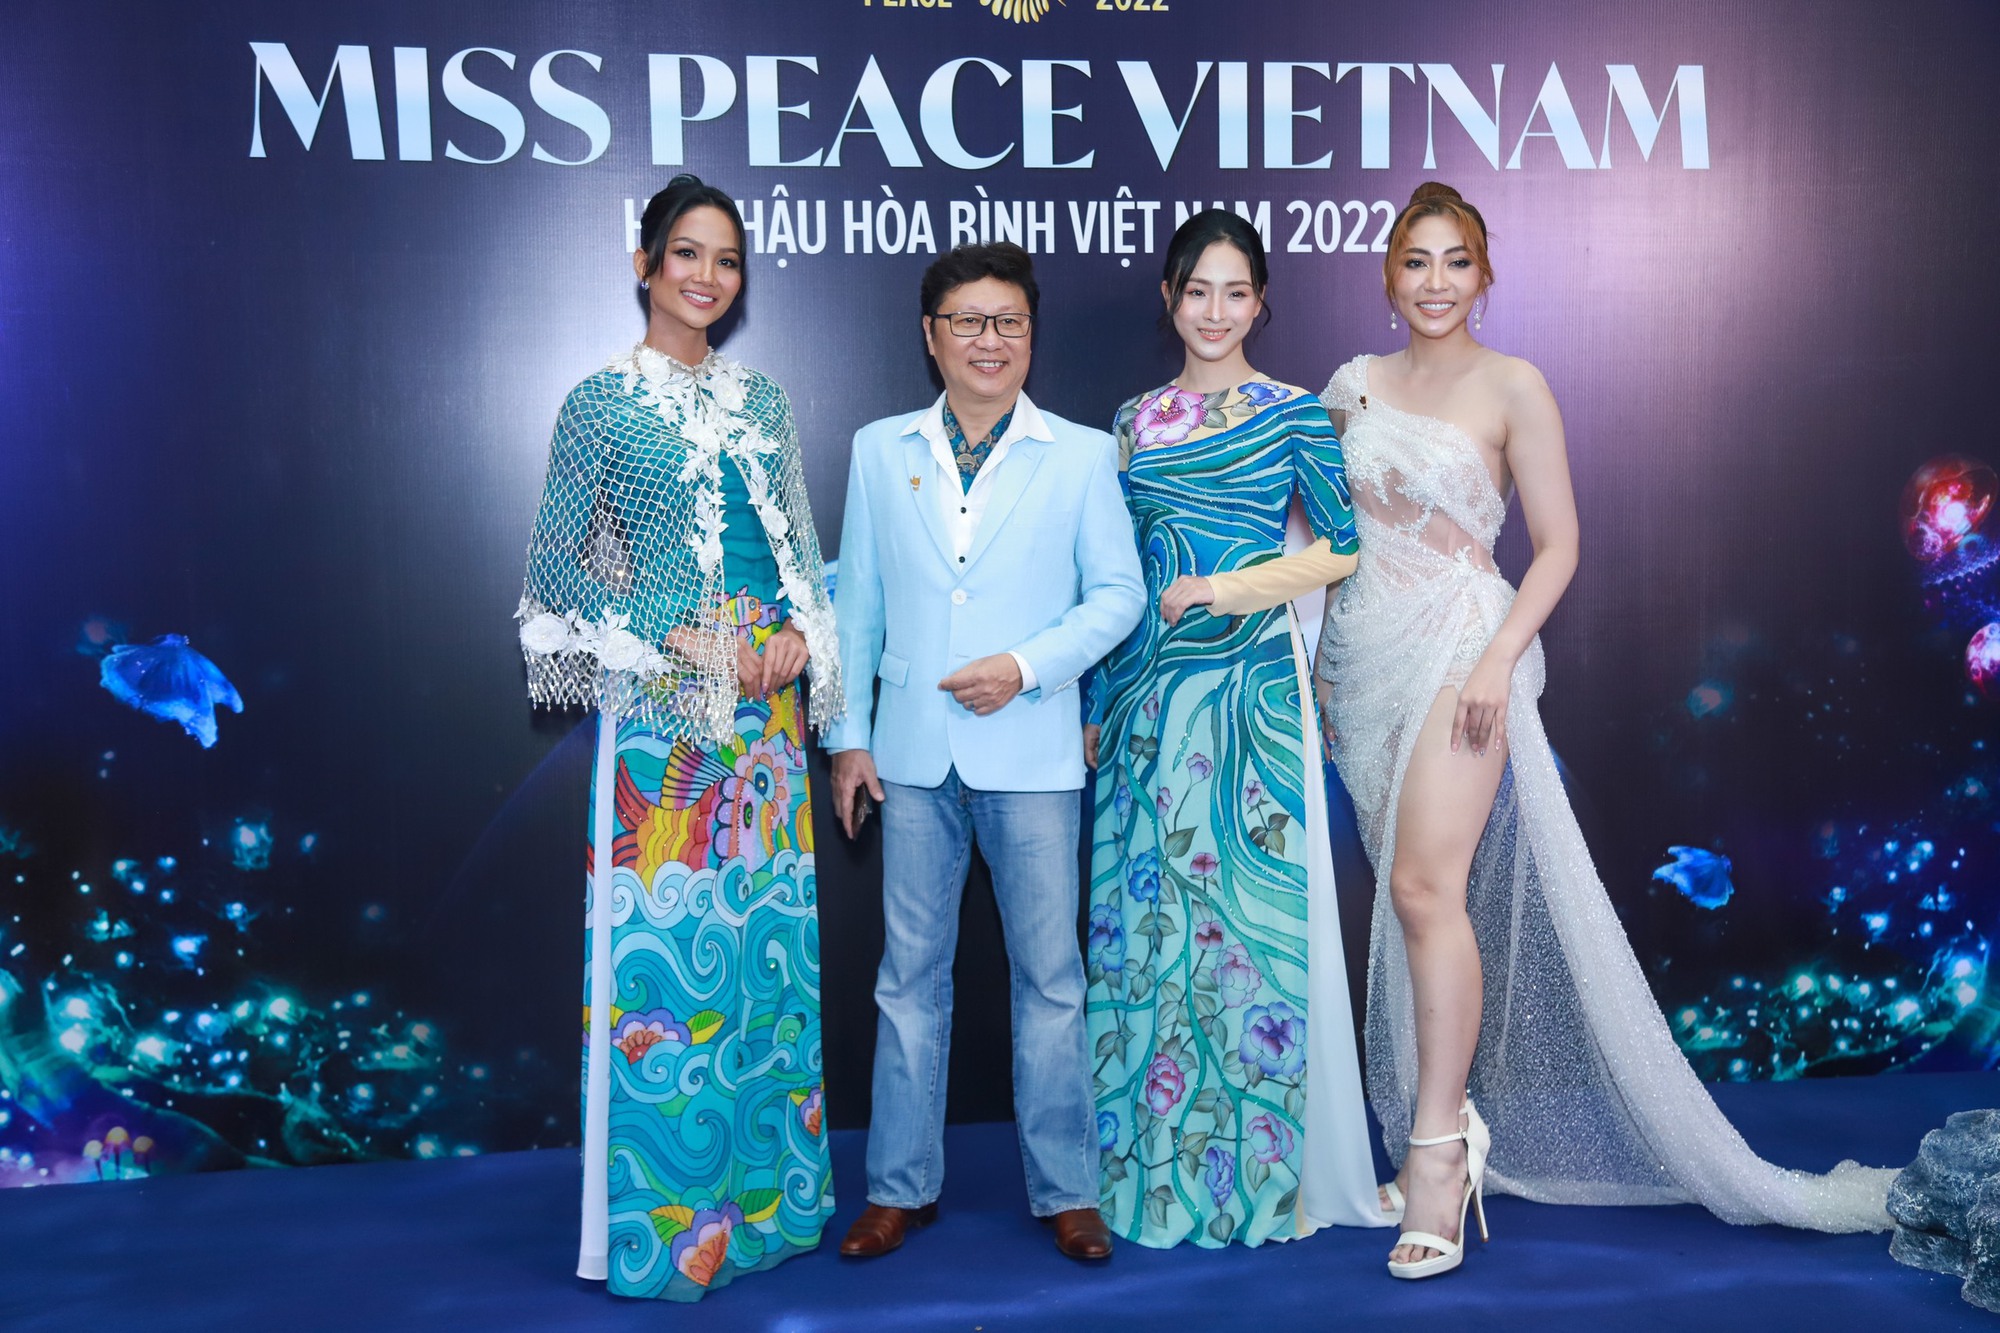 H'Hen Niê - Hoa hậu Đặng Thu Thảo đọ sắc cùng các mỹ nhân trên thảm đỏ Hoa hậu Hòa bình Việt Nam (Miss Peace Vietnam) - Ảnh 8.